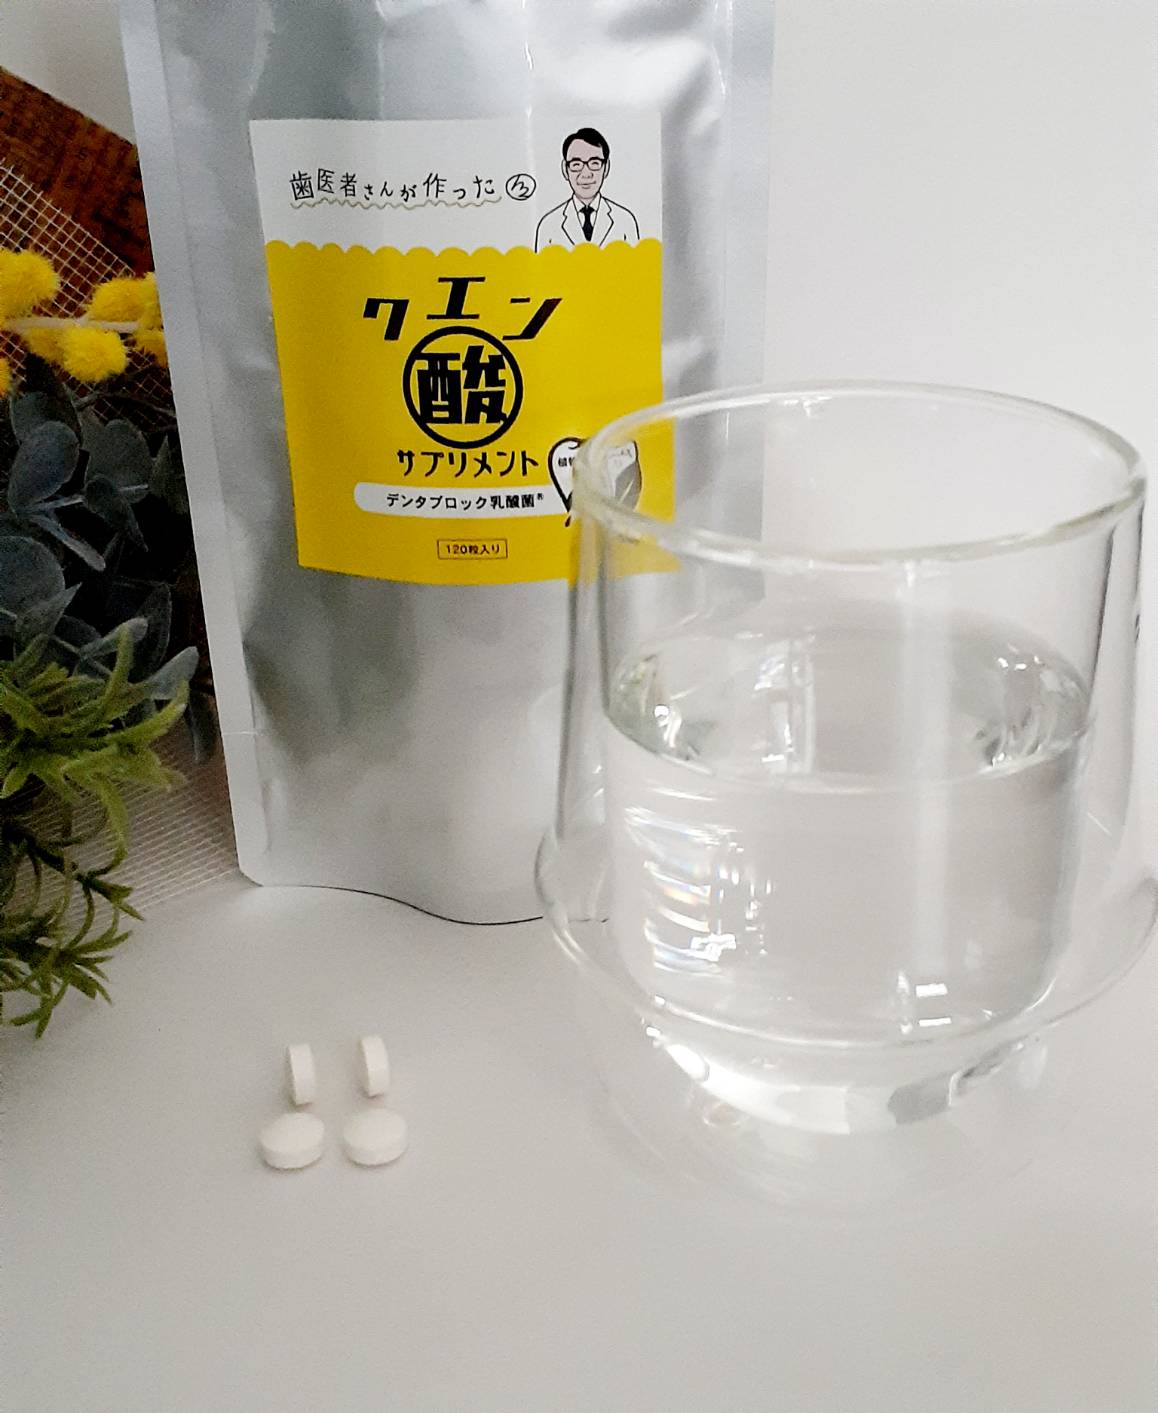 クエン酸サプリメントと錠剤 フジタカSHOPで販売しています。https://fujitaka.shop/?pid=169420557